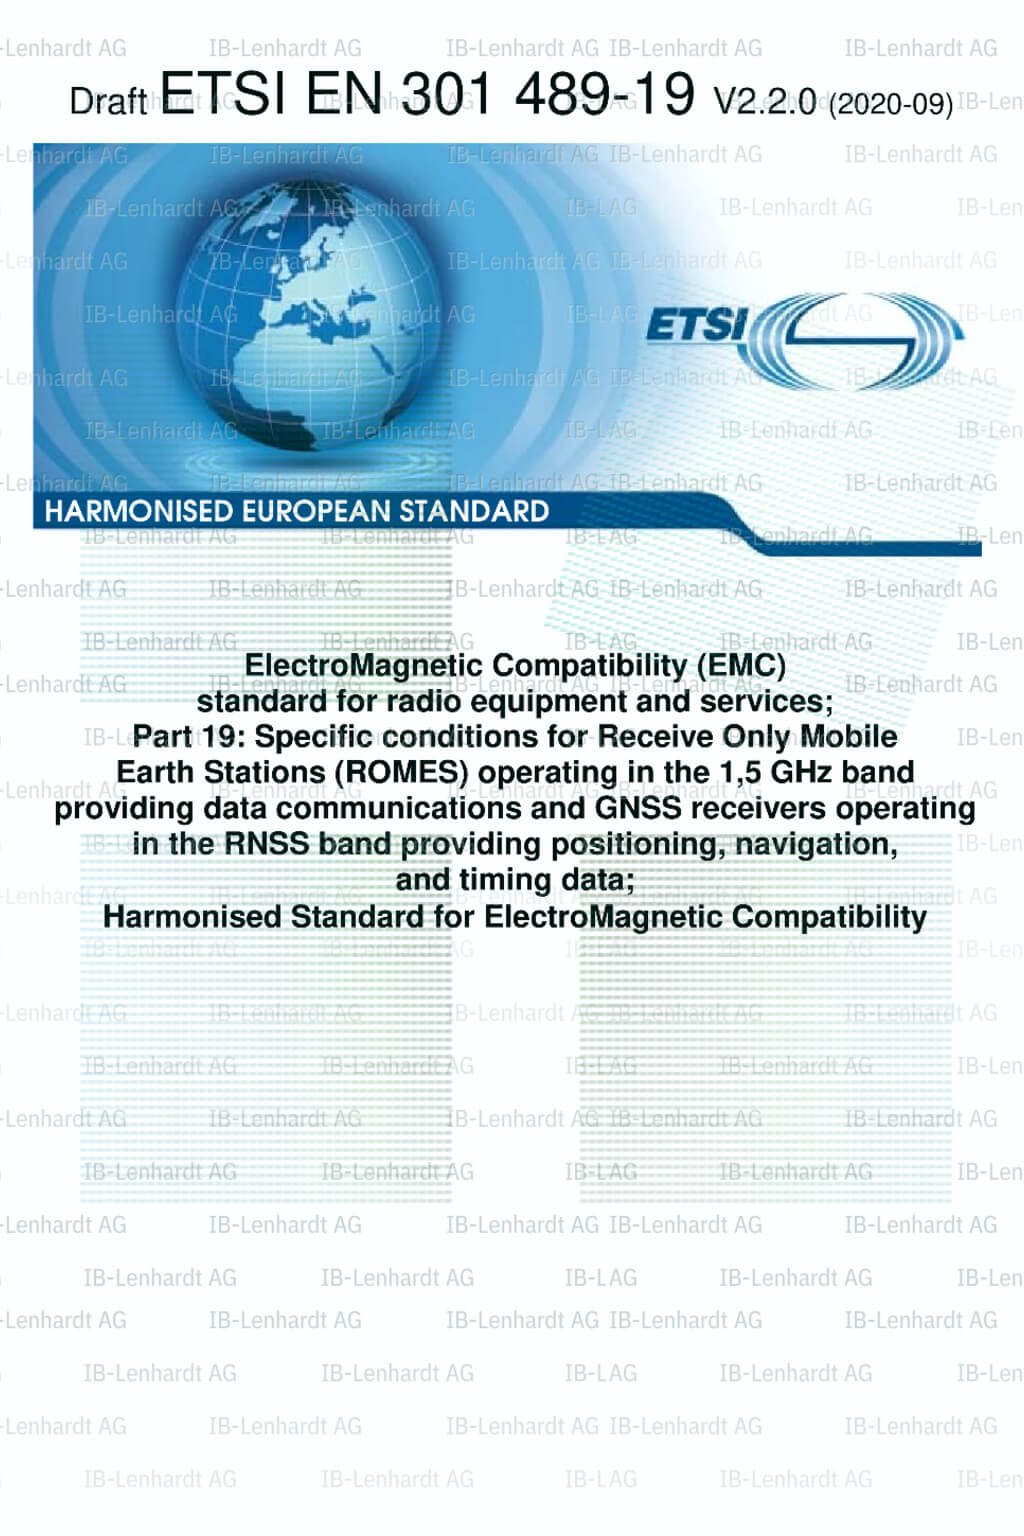 ETSI EN 301 489-19 V2.2.0 (Draft)